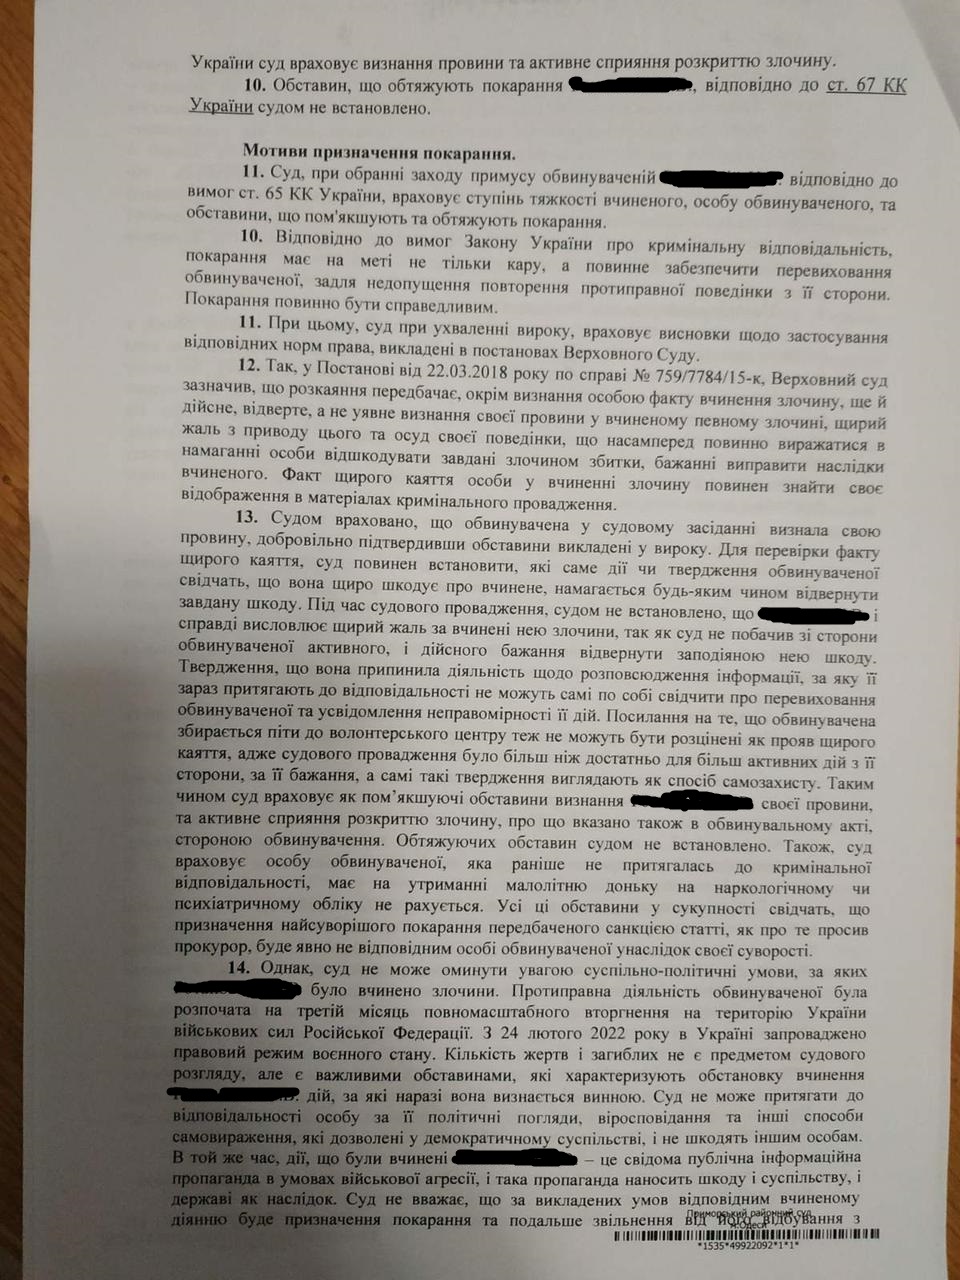 Жительку Одеської області, яка адмініструвала проросійський телеграм-канал, засудили до трьох років ув'язнення